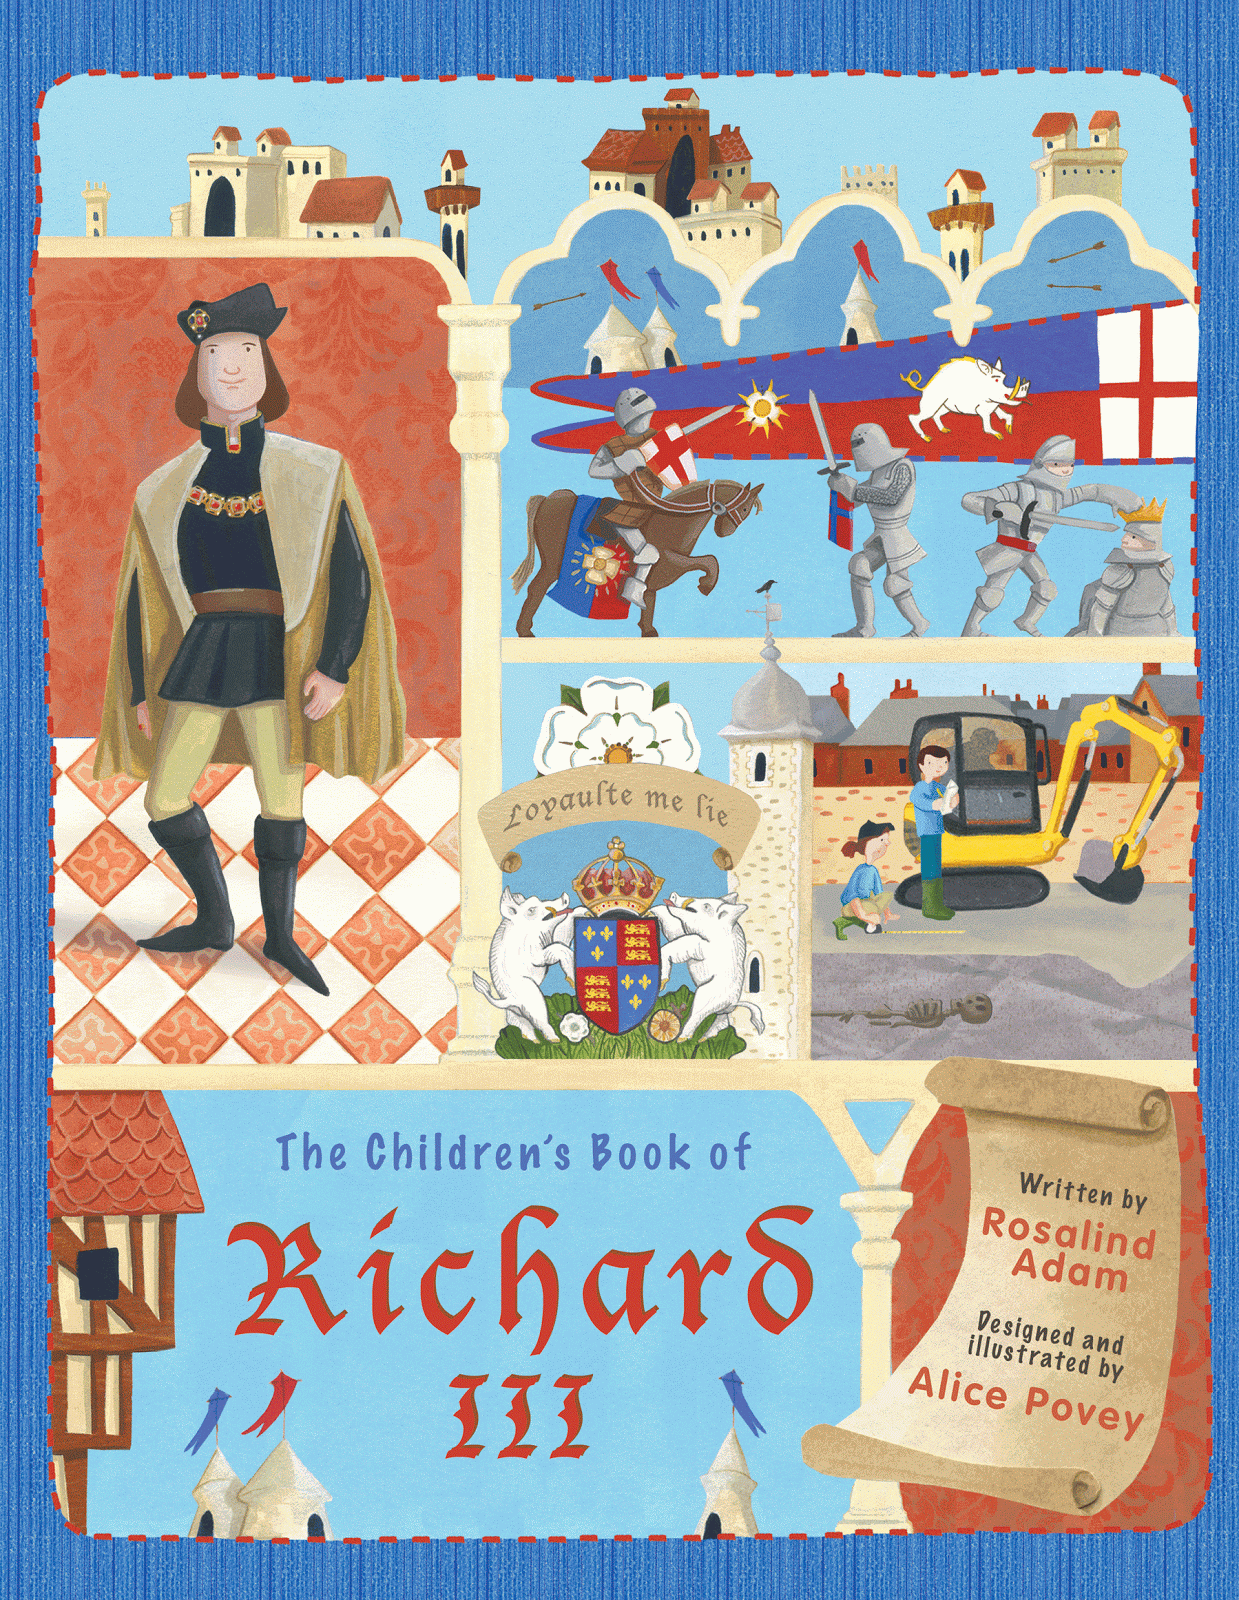 The Children's Book of Richard III